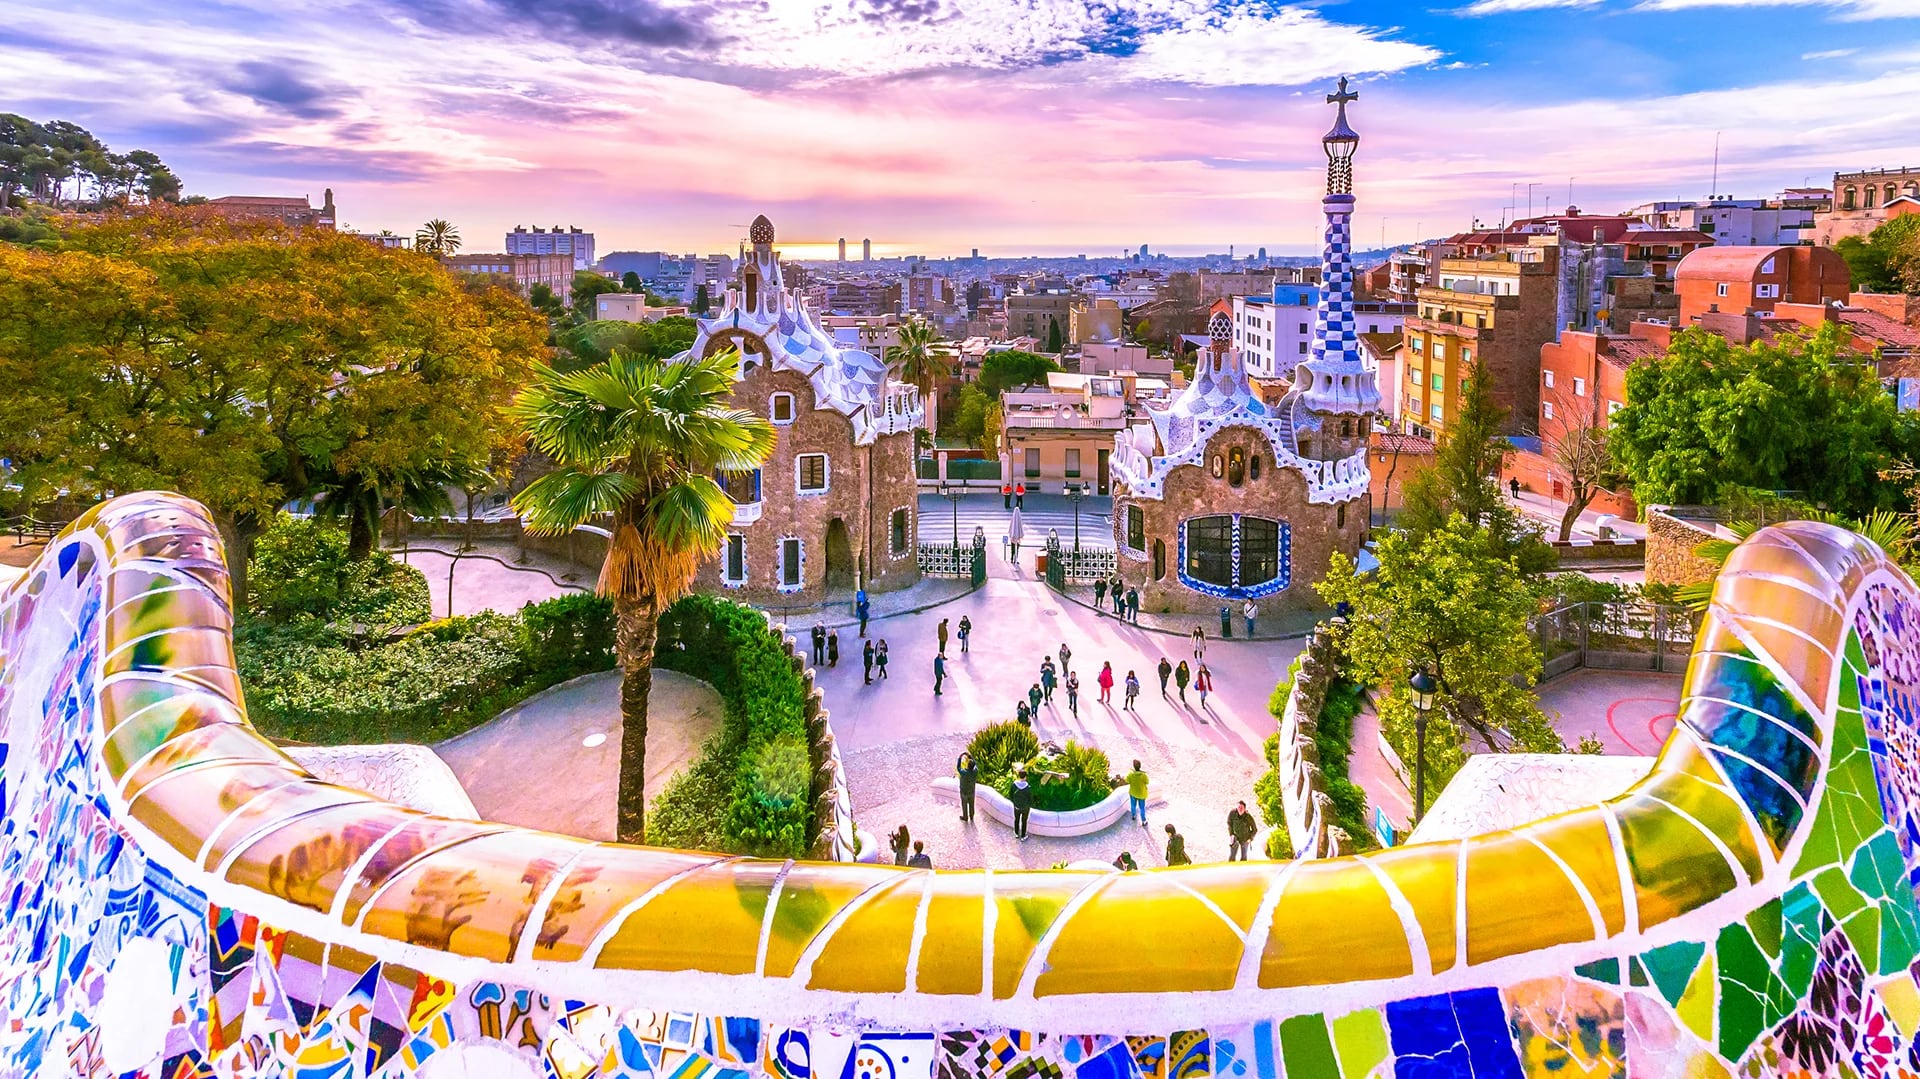 En la parte superior del Parc Güell hay una terraza con una vista maravillosa del parque y de la ciudad de Barcelona